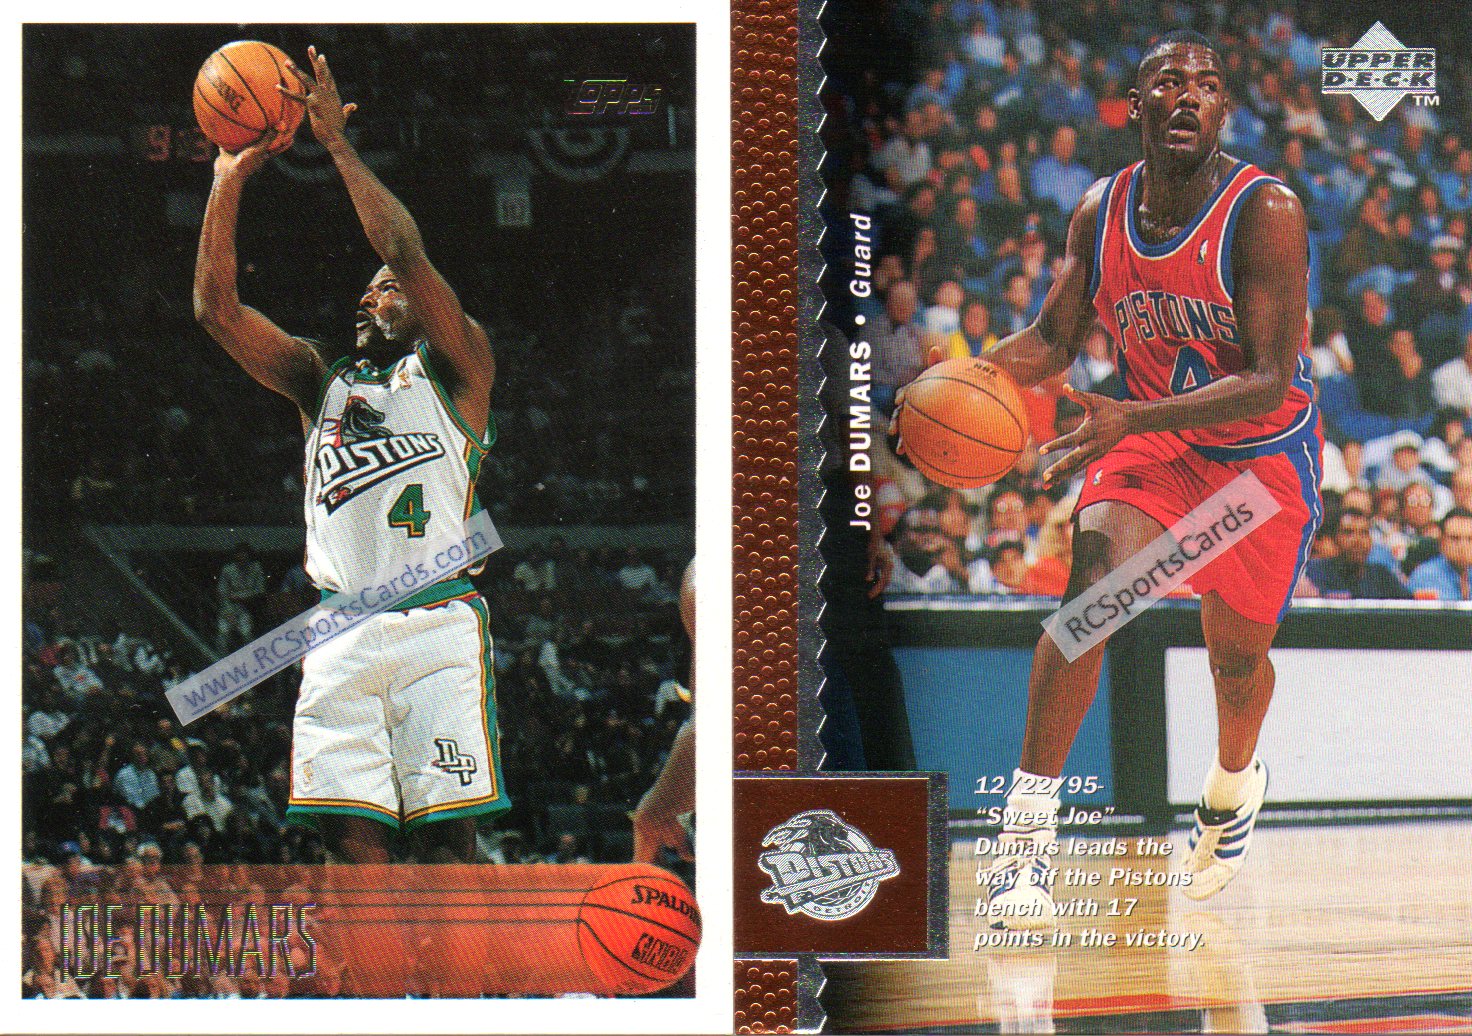 JOE DUMARS 1996-97 Topps Basketball Card #213 Detroit Pistons